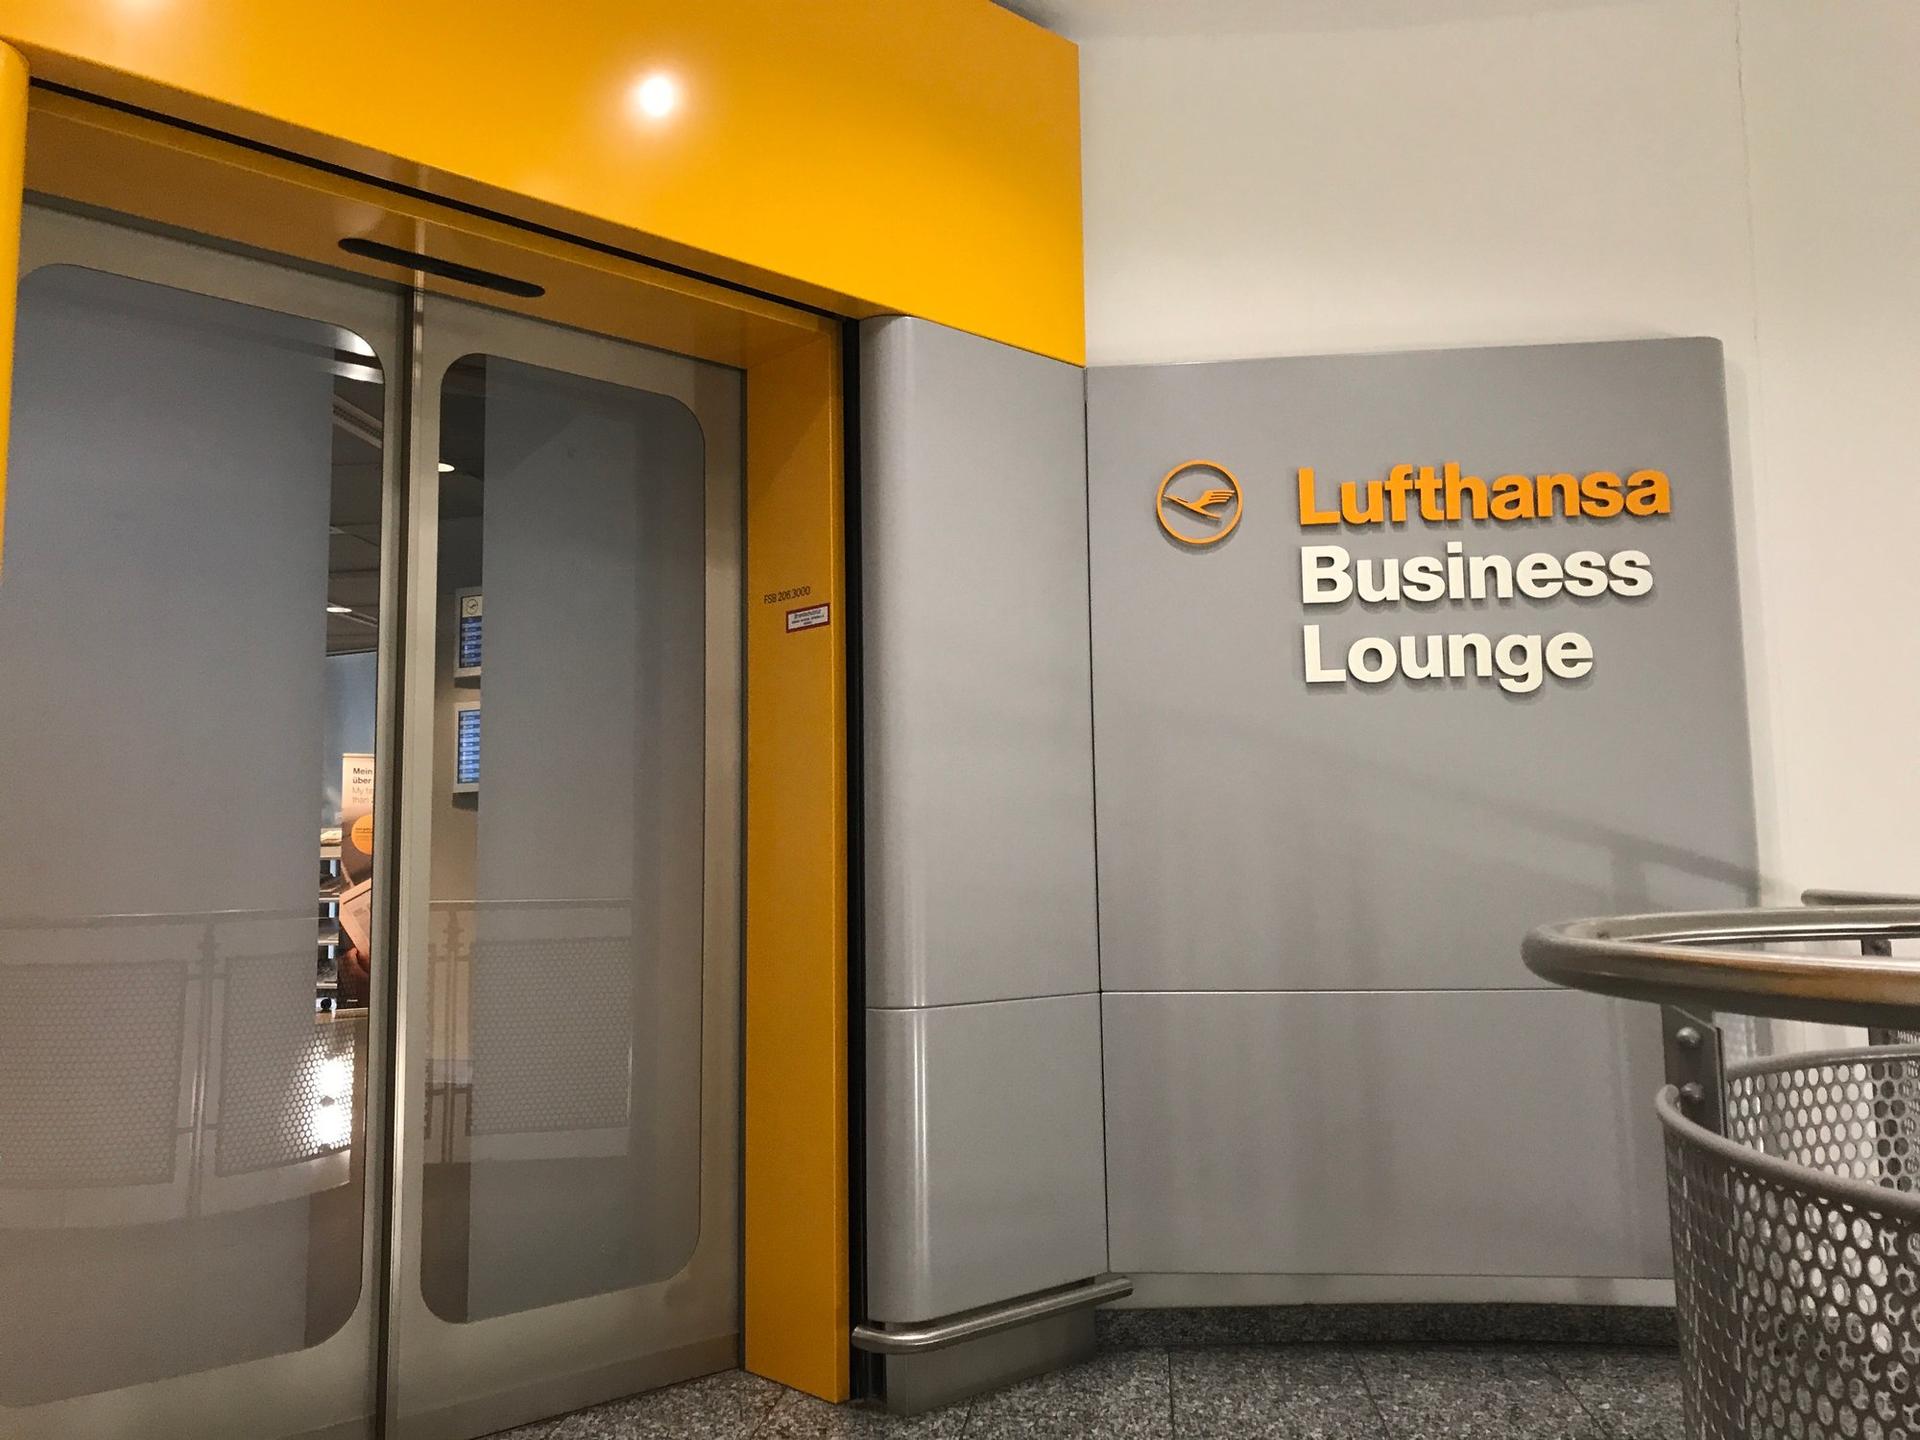 Lufthansa Business Lounge (Non-Schengen, Gates B44-B48) image 11 of 46